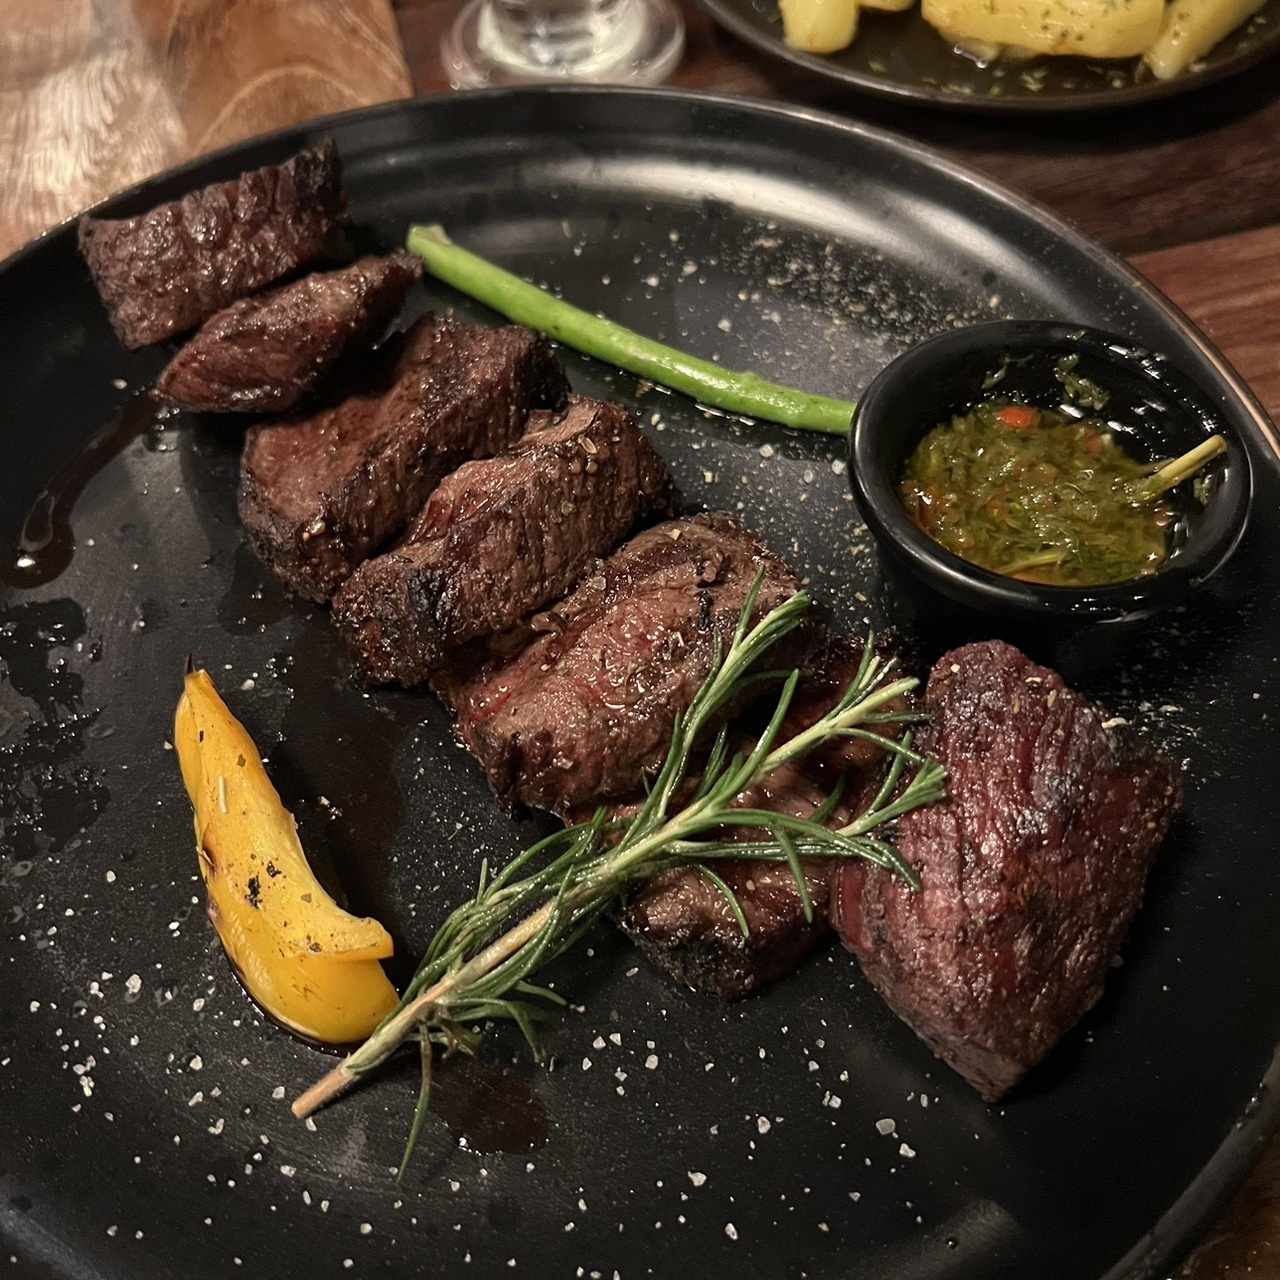 Denver Steak